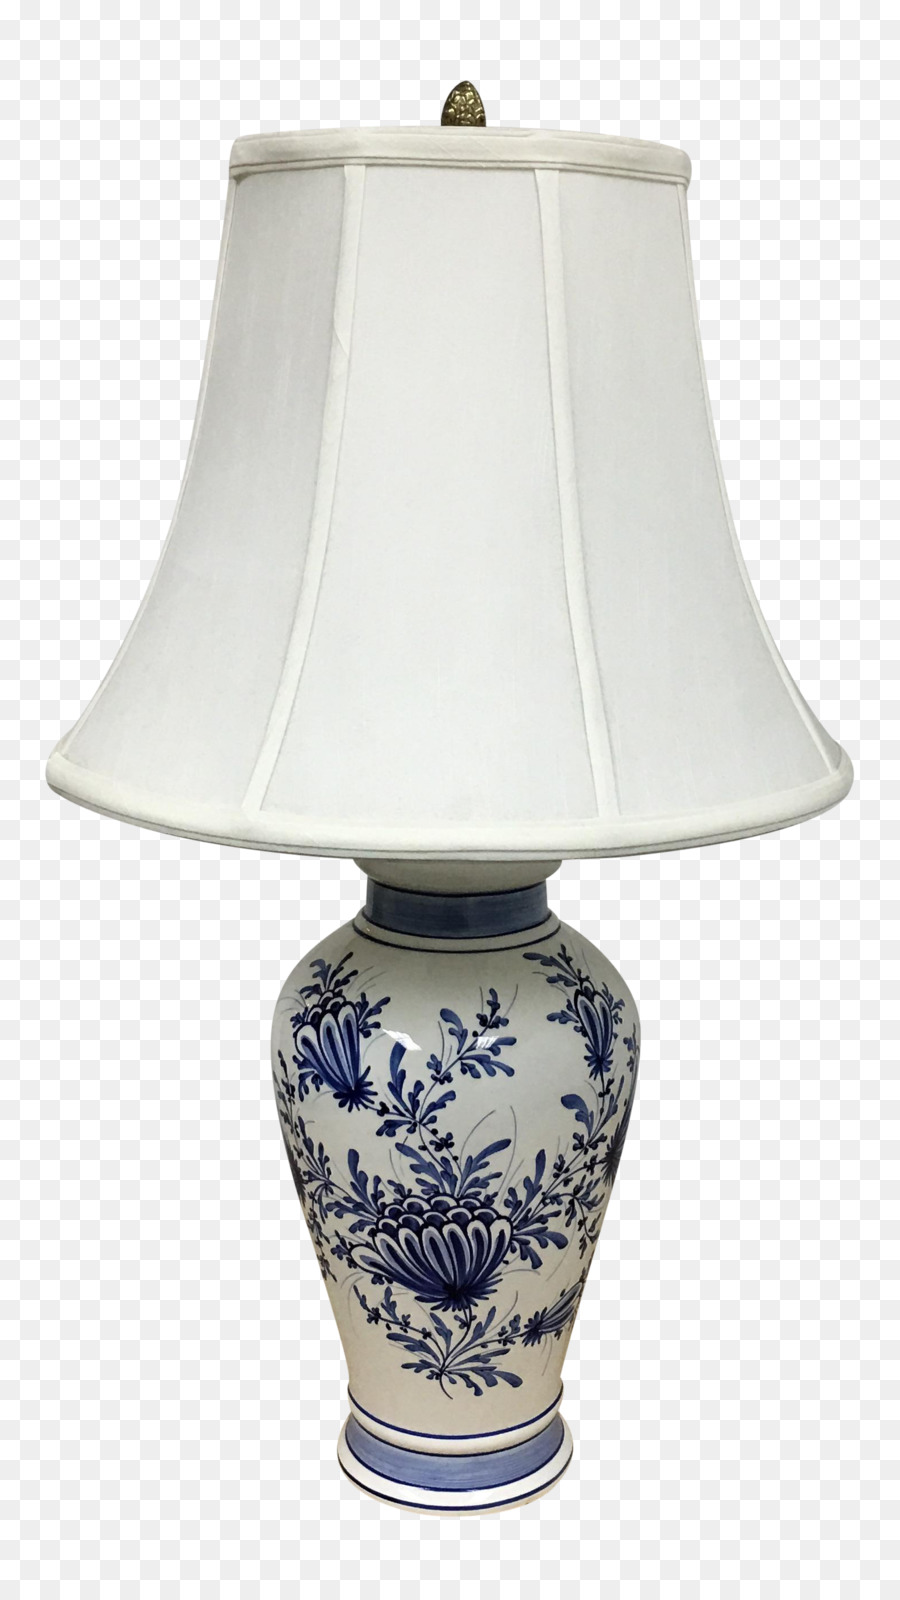 Keramik Blau und weiß Keramik Porzellan - Design